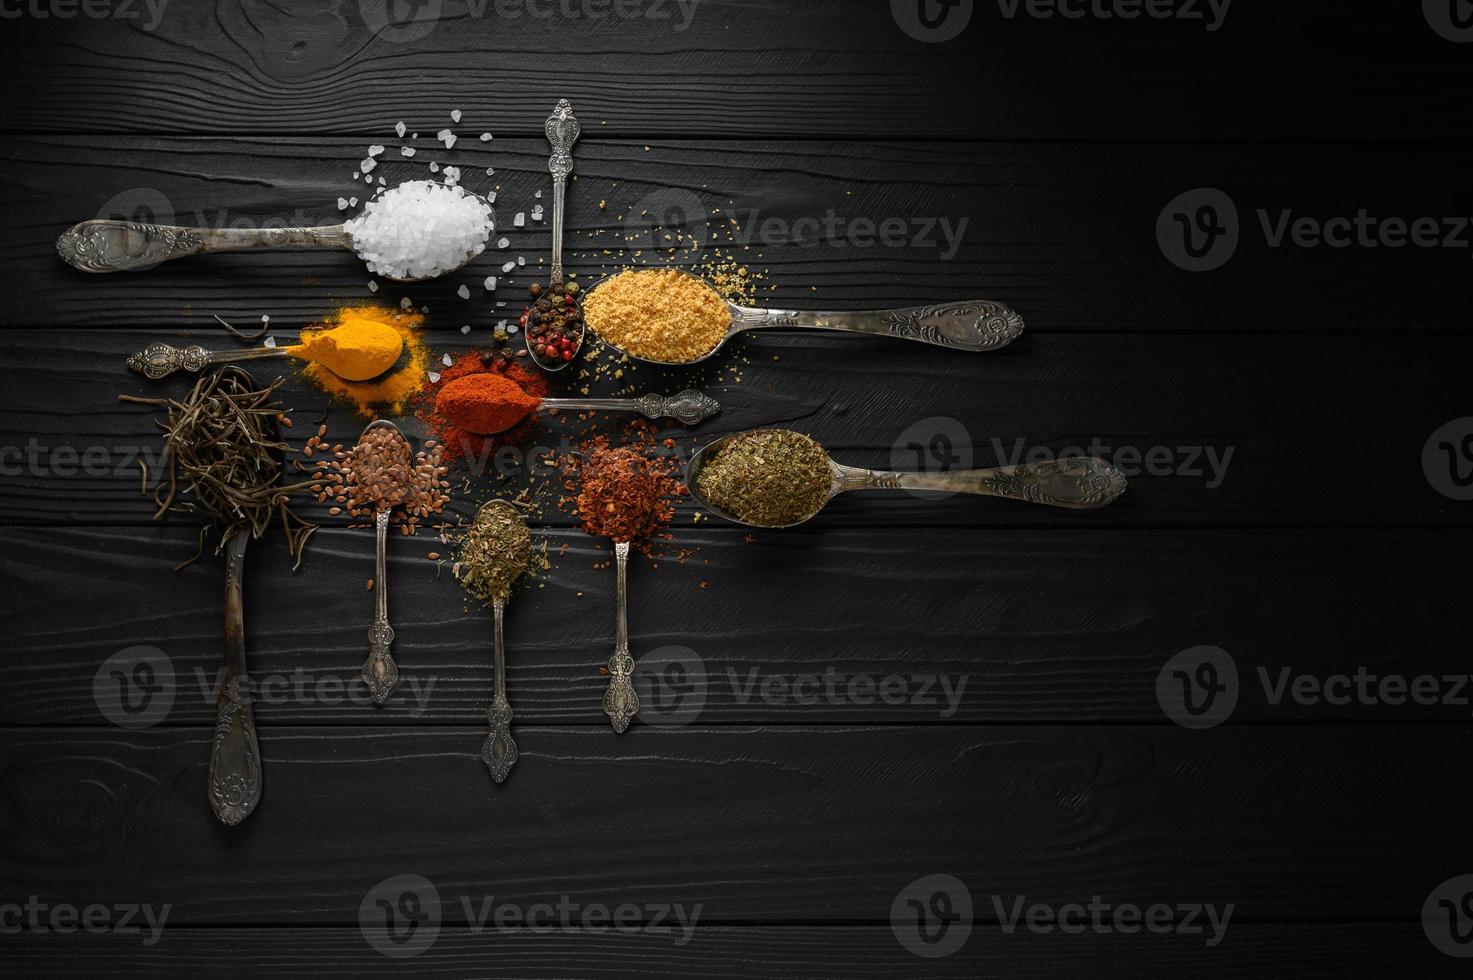 kleurrijke verschillende kruiden en specerijen voor het koken op donkere houten rustieke achtergrond foto